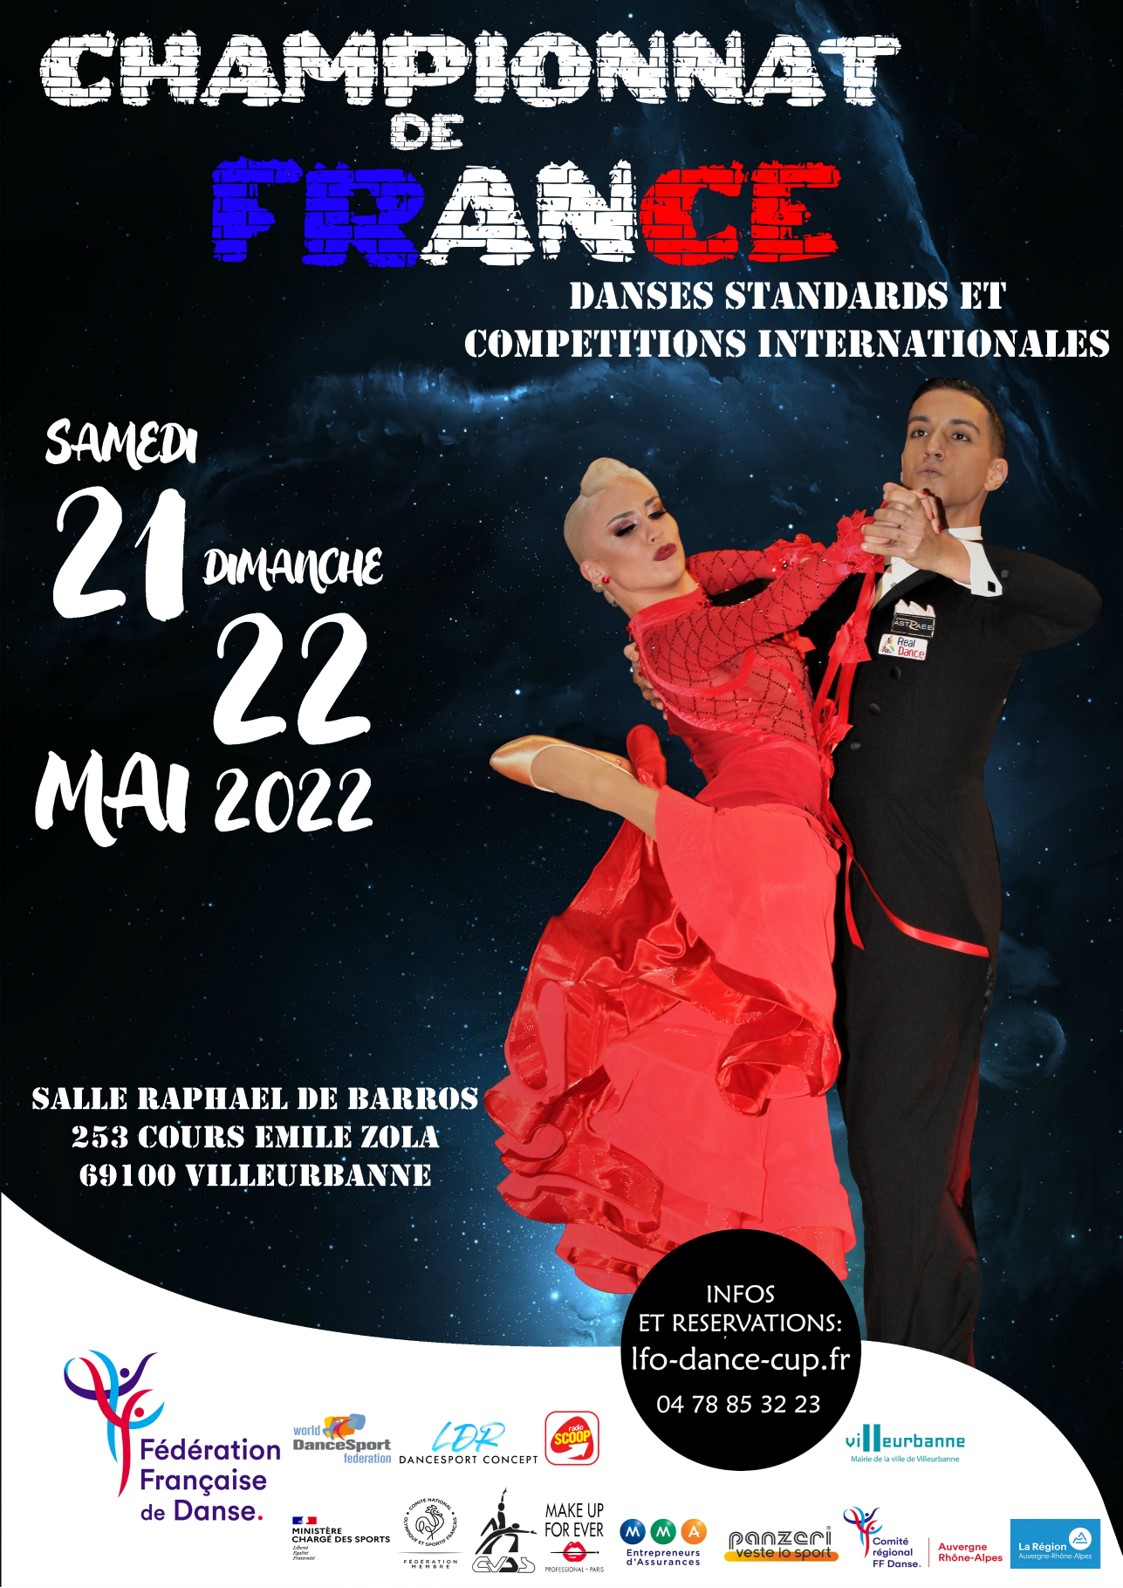 Championnats de France de Danses Standards et Compétitions Internationales de danses Latines et Standards